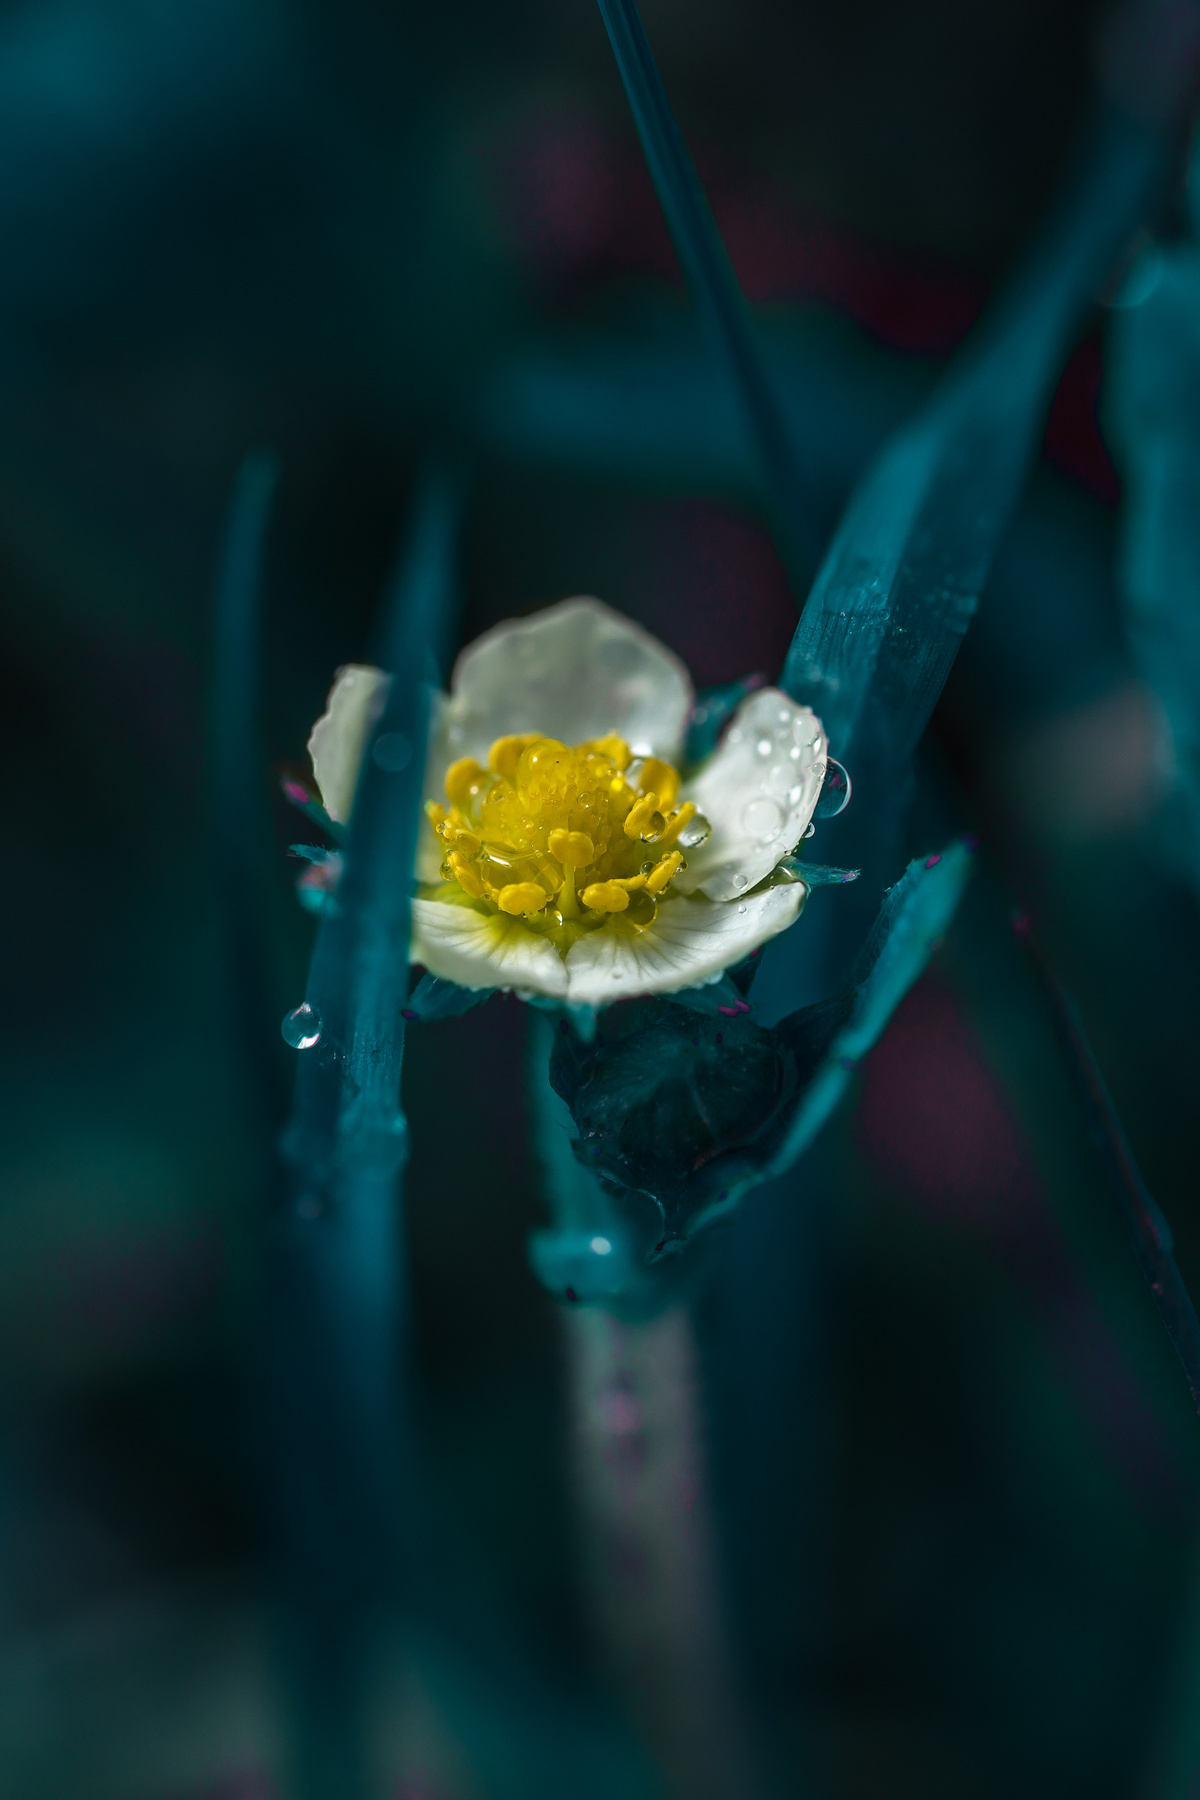 "Звонкое настроение". цветок в траве белый густой с желтой сердцевиной